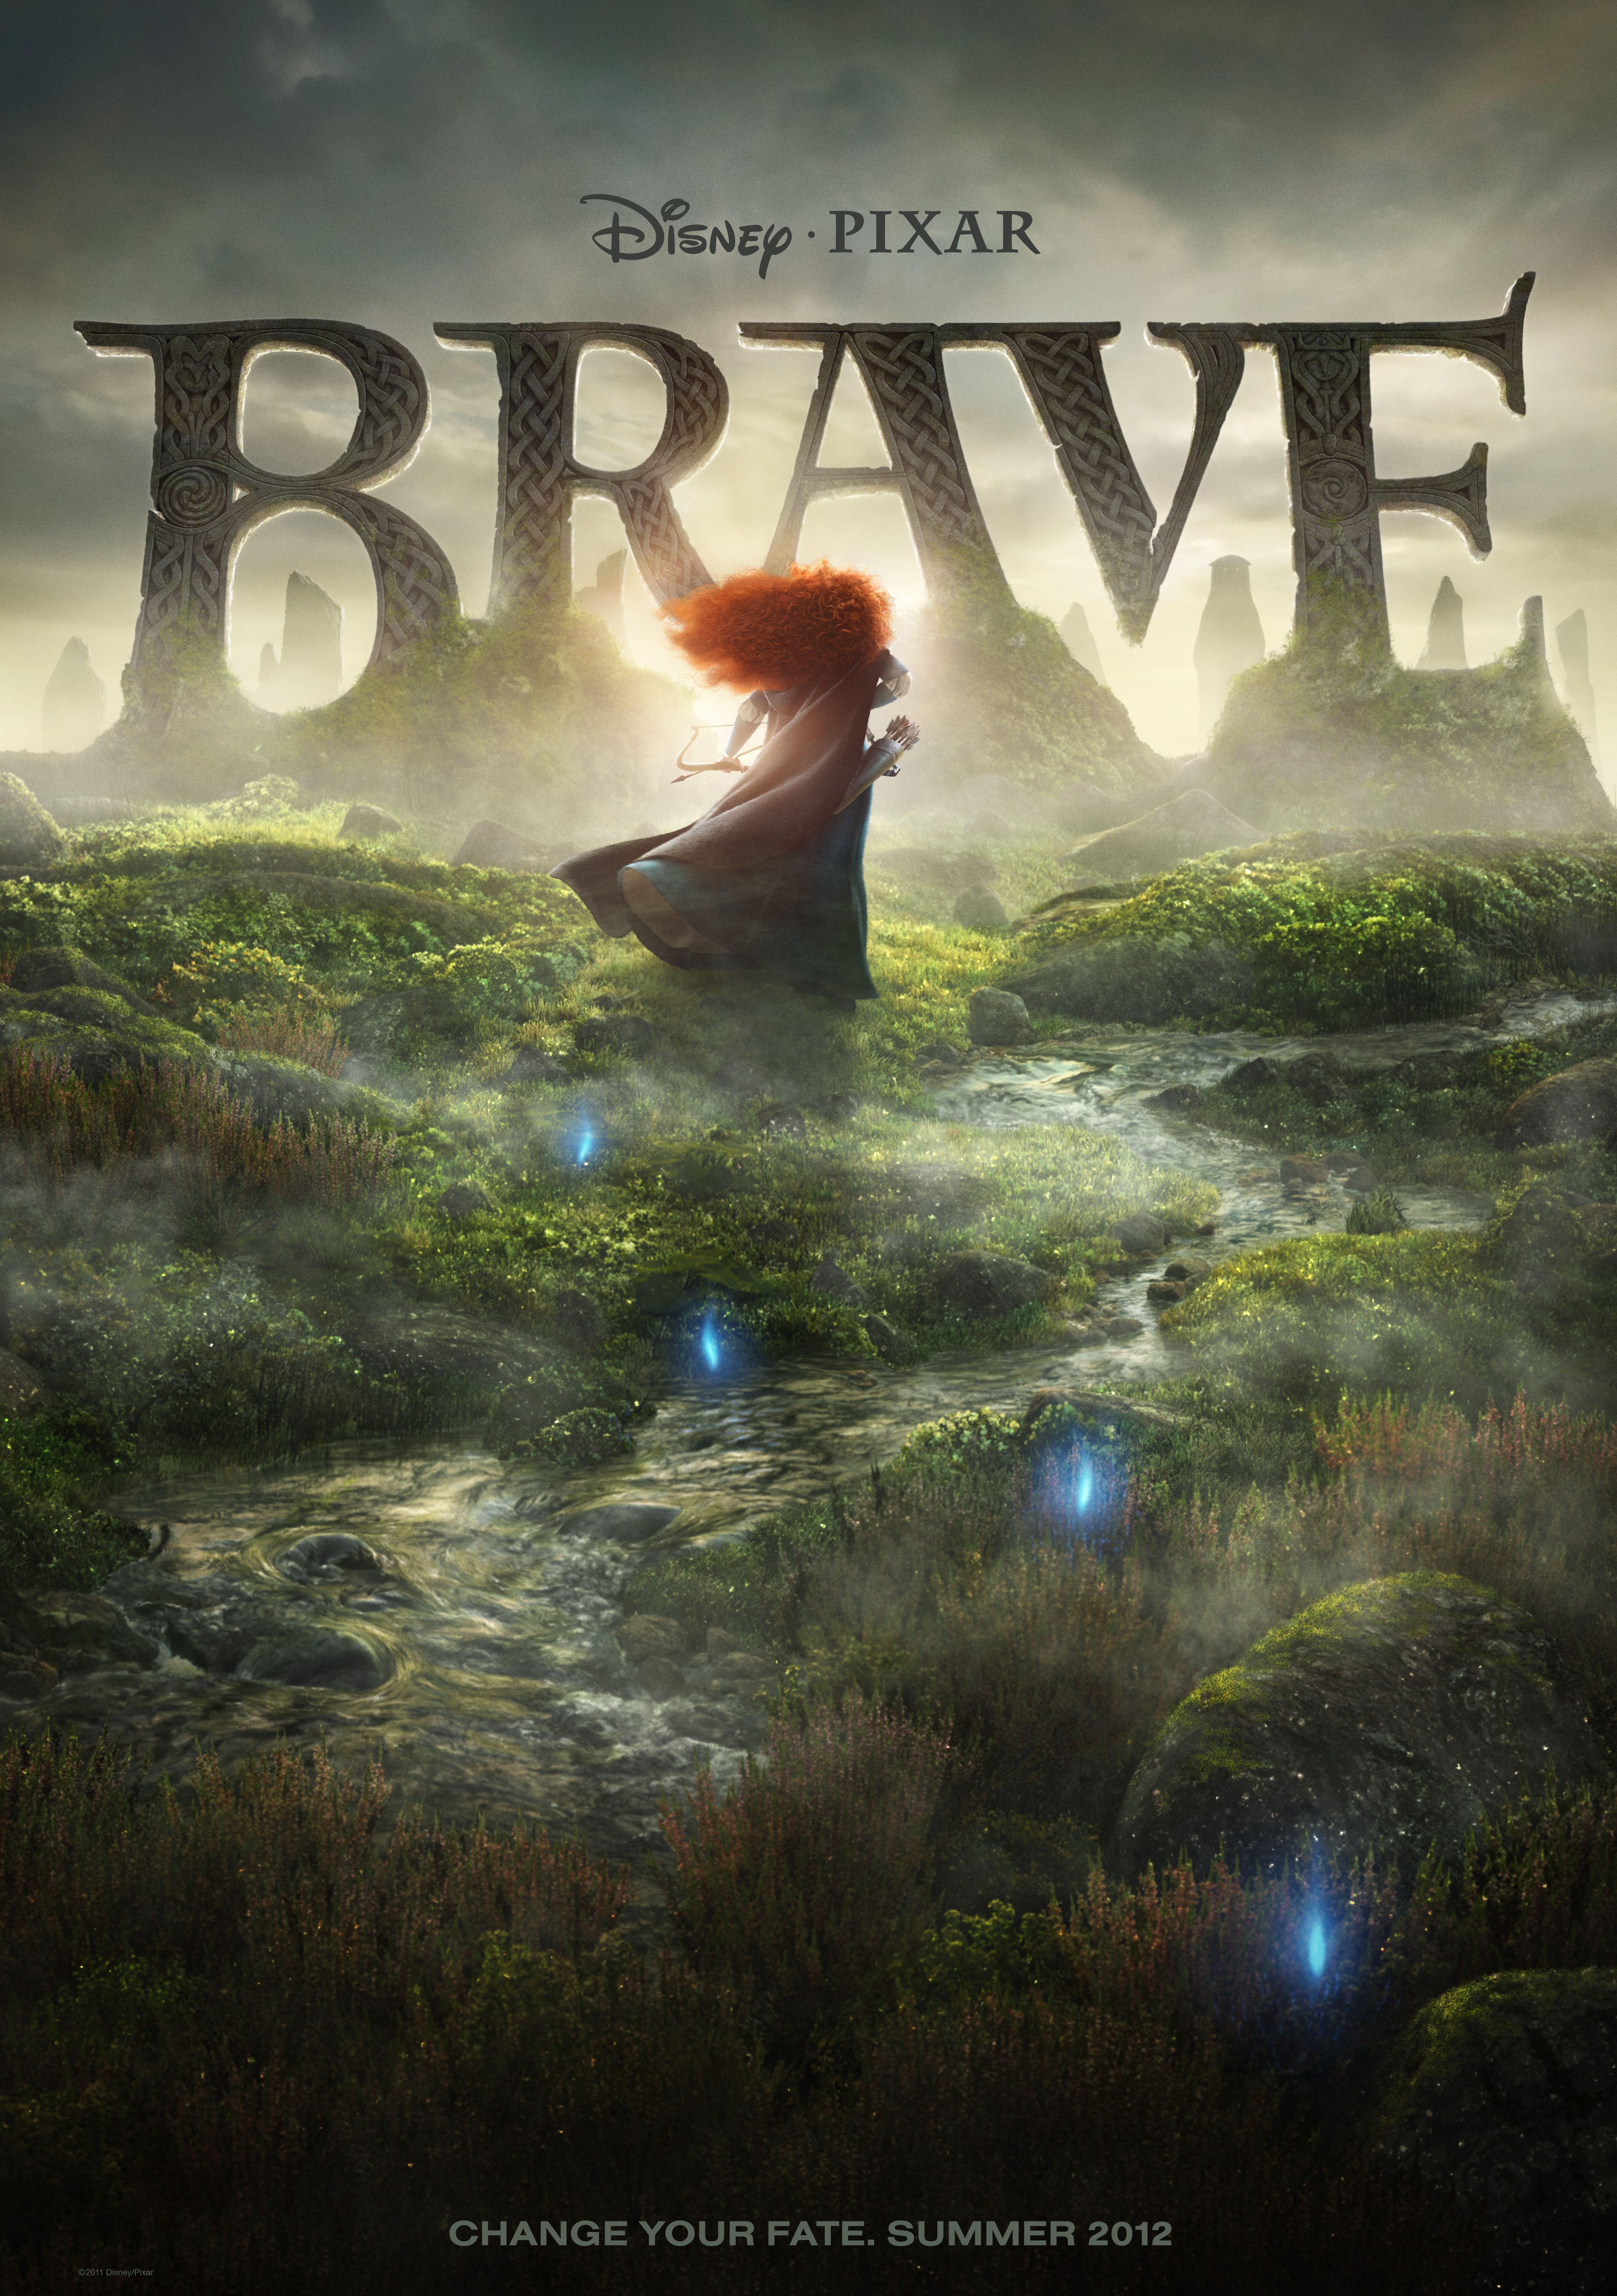 Disney Pixar Brave poster - Change Your Fate. Summer 2012